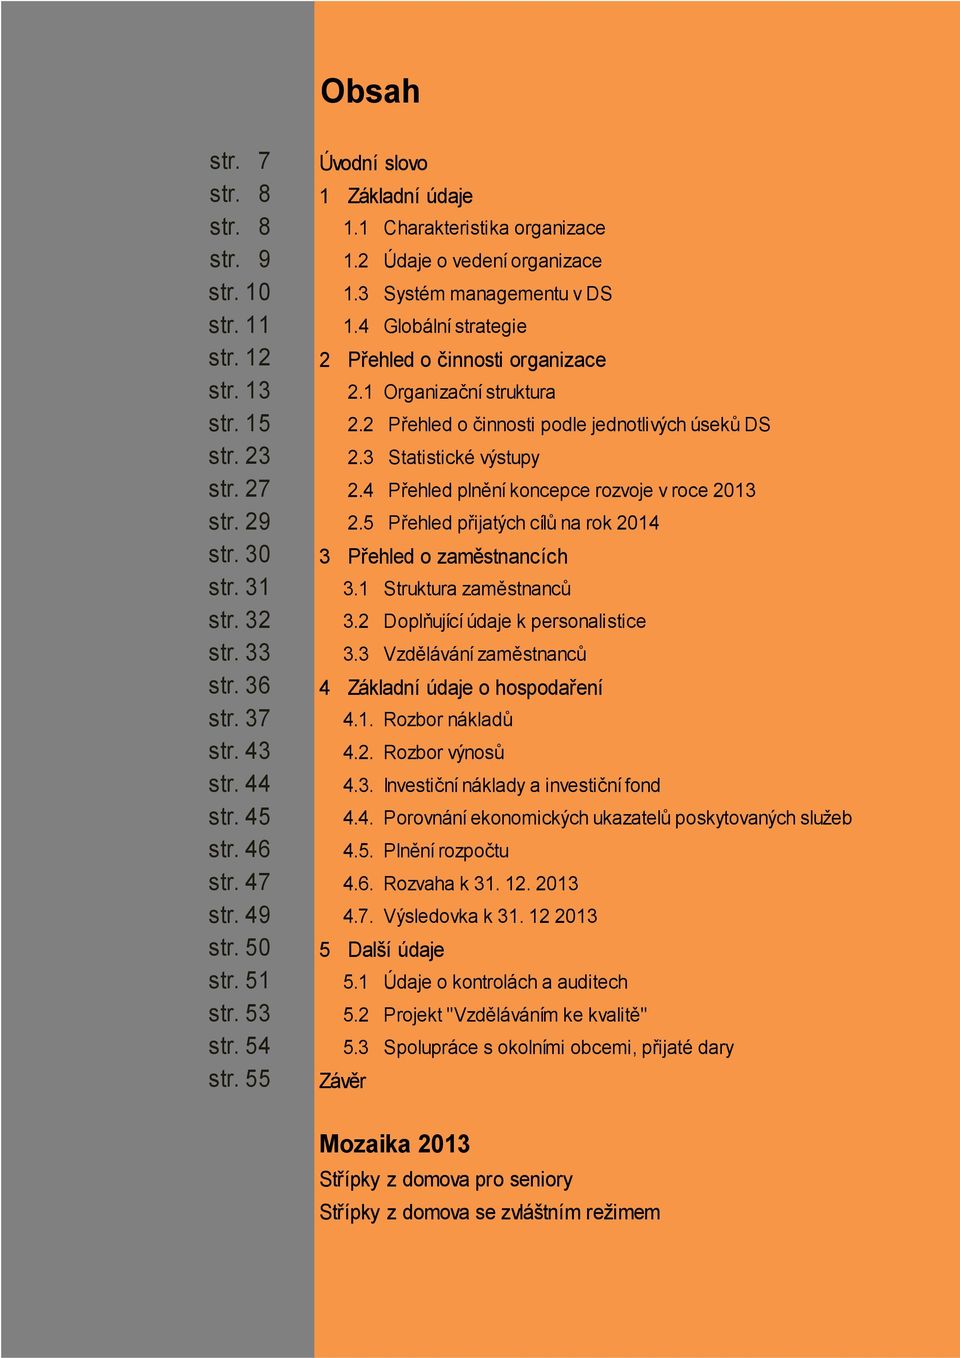 4 Přehled plnění koncepce rozvoje v roce 2013 str. 29 2.5 Přehled přijatých cílů na rok 2014 str. 30 3 Přehled o zaměstnancích str. 31 3.1 Struktura zaměstnanců str. 32 3.